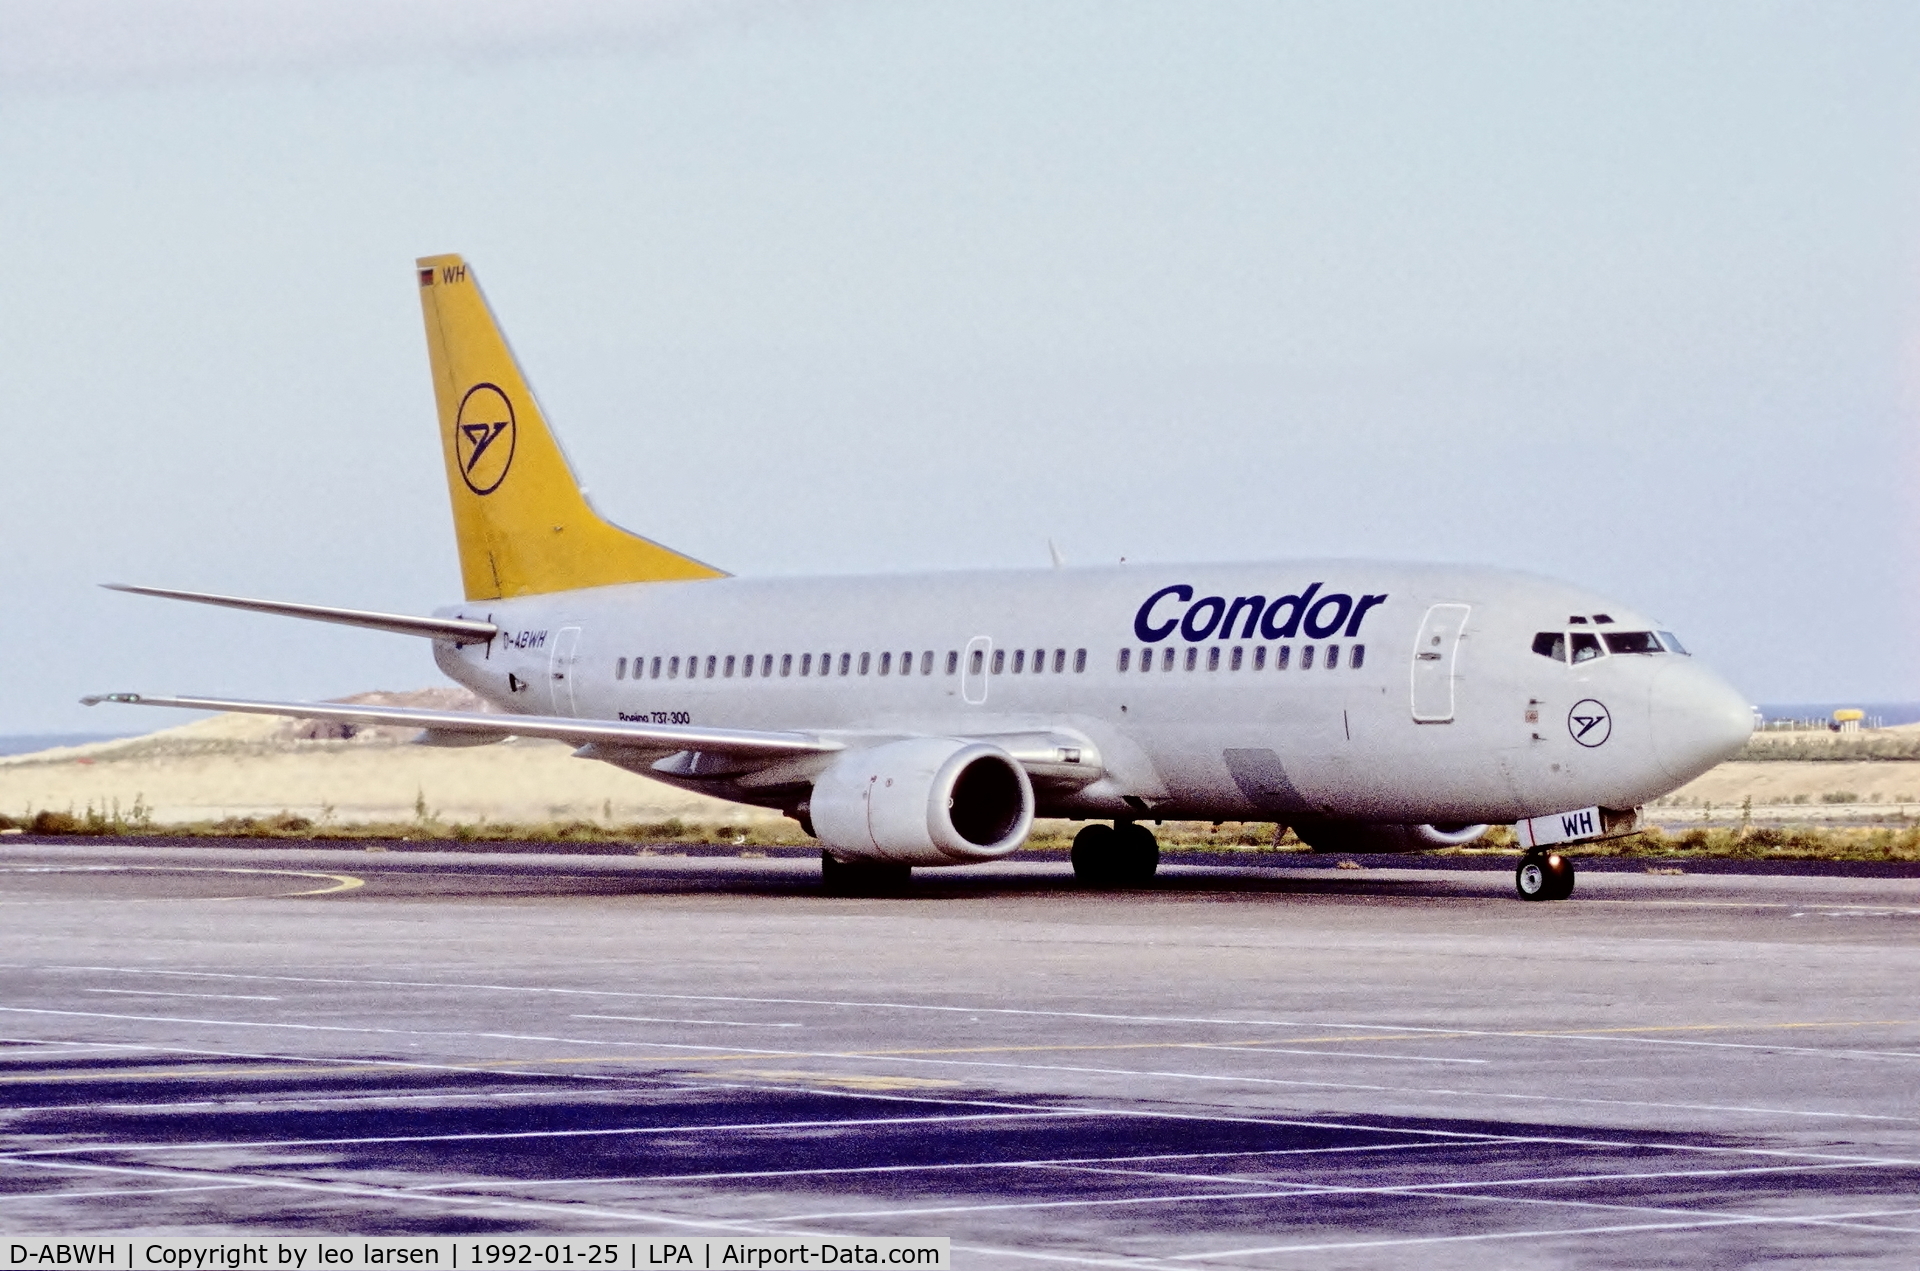 D-ABWH, 1989 Boeing 737-330 C/N 24284, Las Palmas 25.1.1992 in Condor c/s.